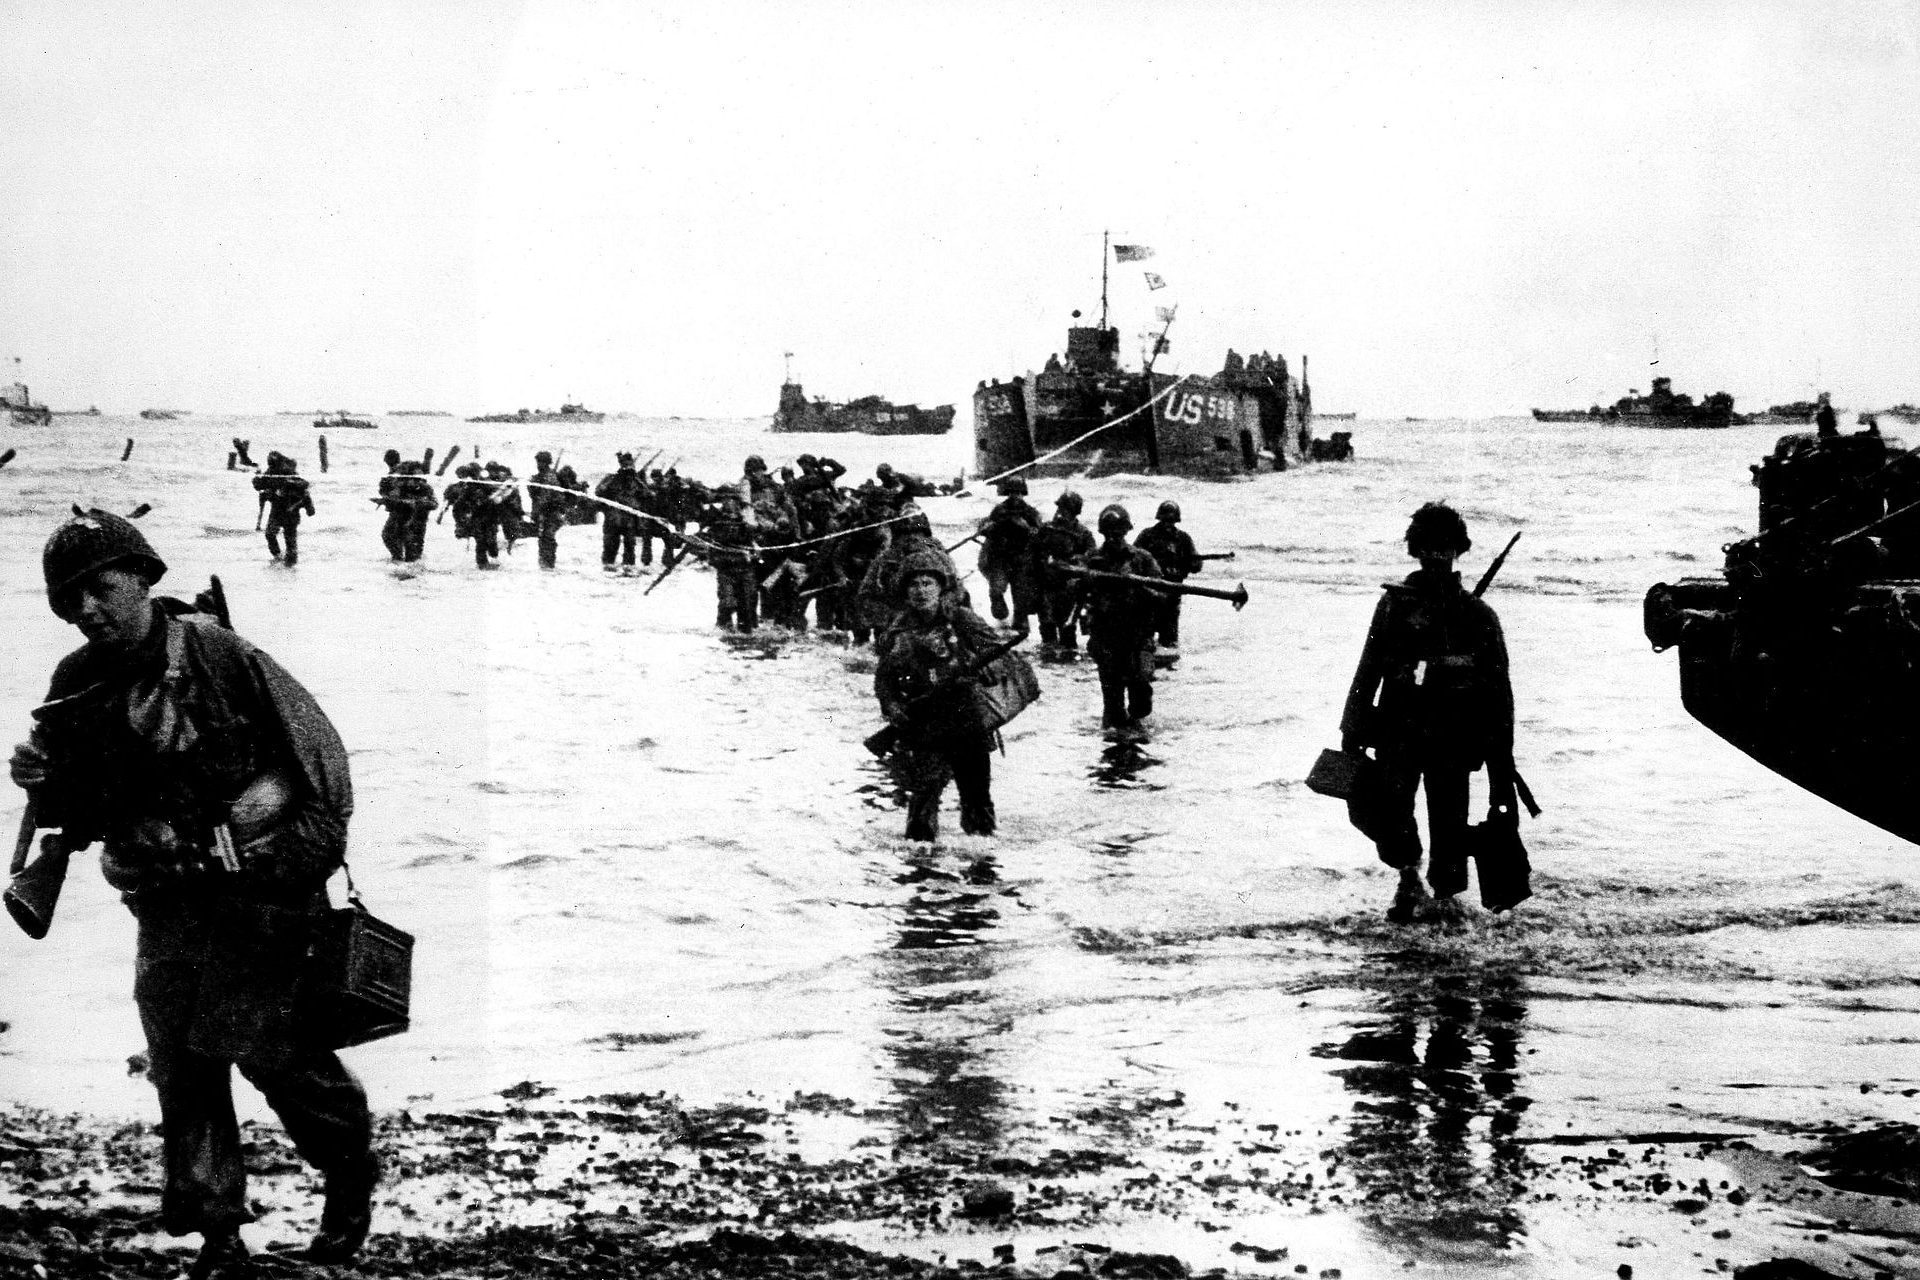 Le foto storiche dello sbarco degli Alleati in Normandia nel 1944